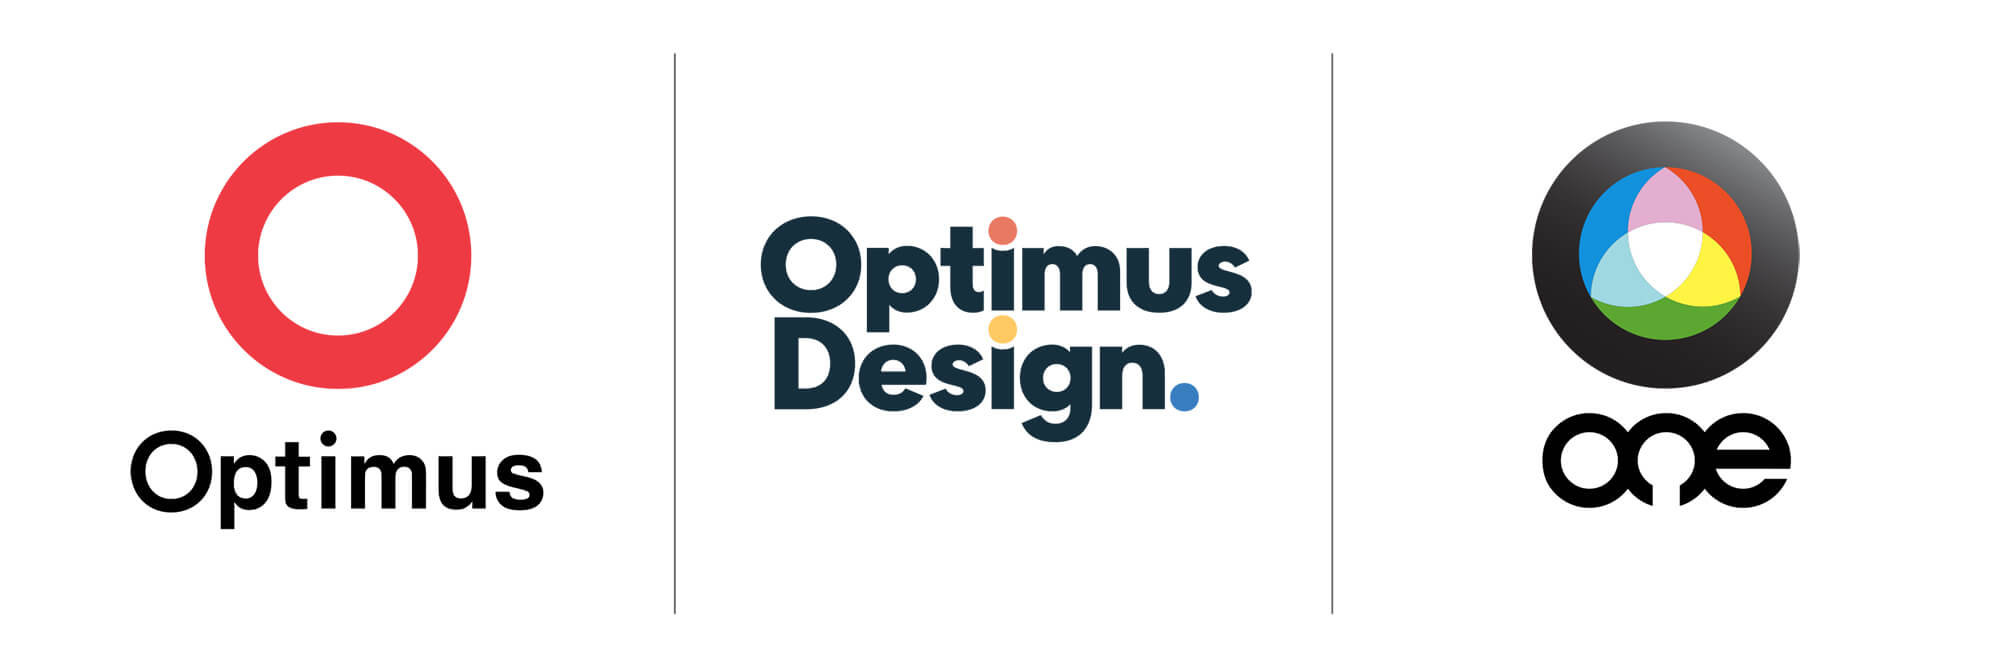 logos for optimus, optimus design, and optimus one